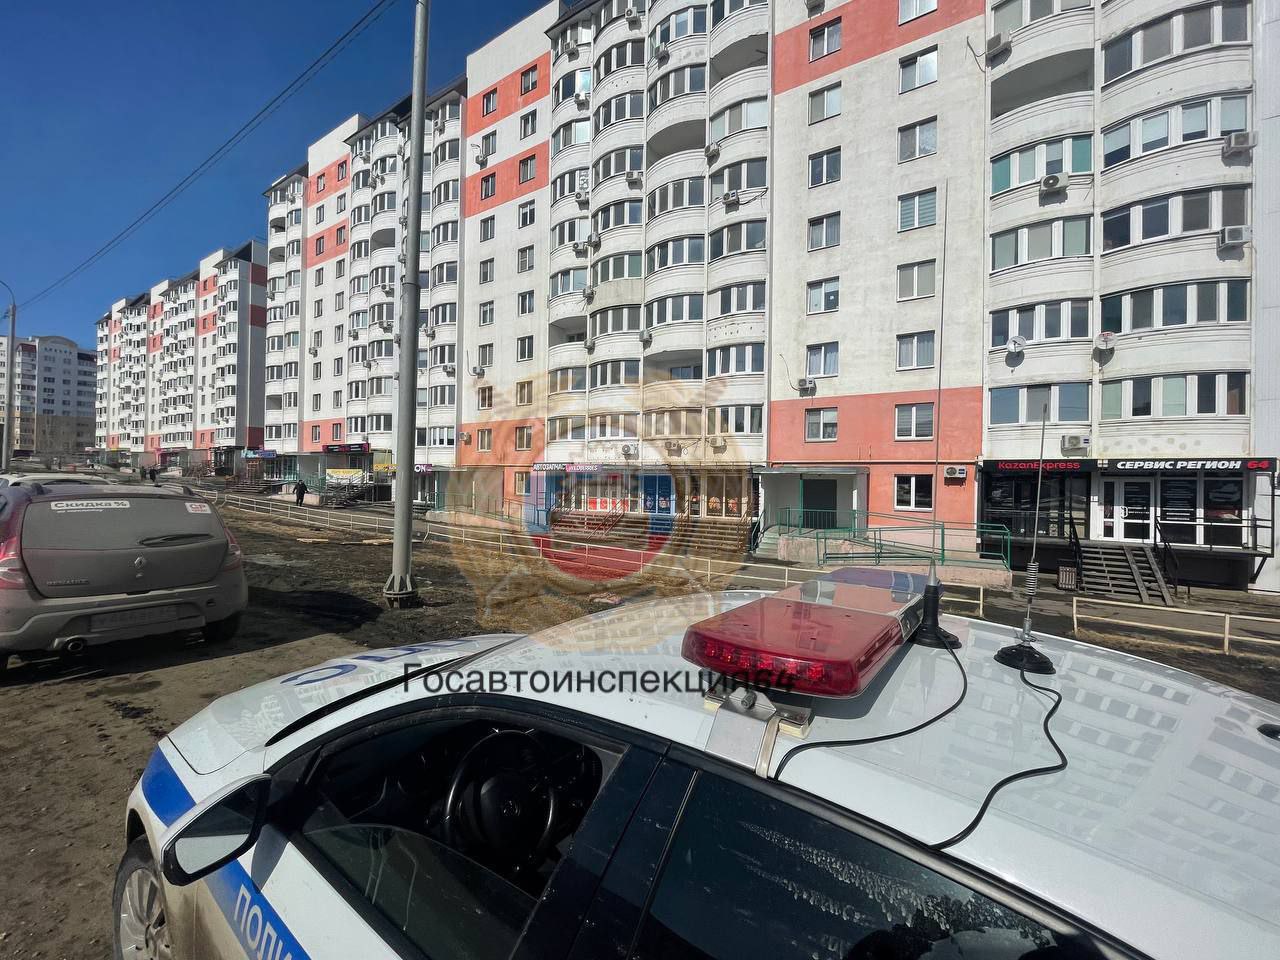 В саратовском микрорайоне оштрафовали водителя за езду по тротуарам